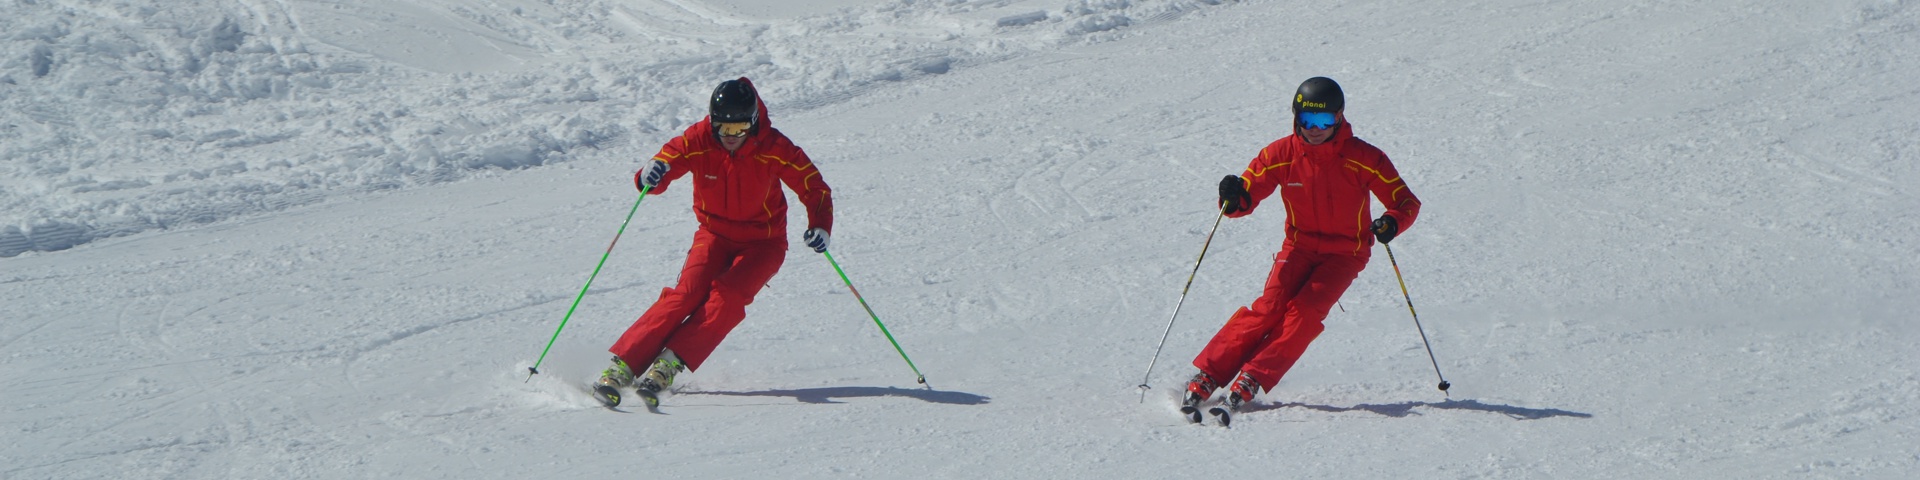 Skischule Amadeus